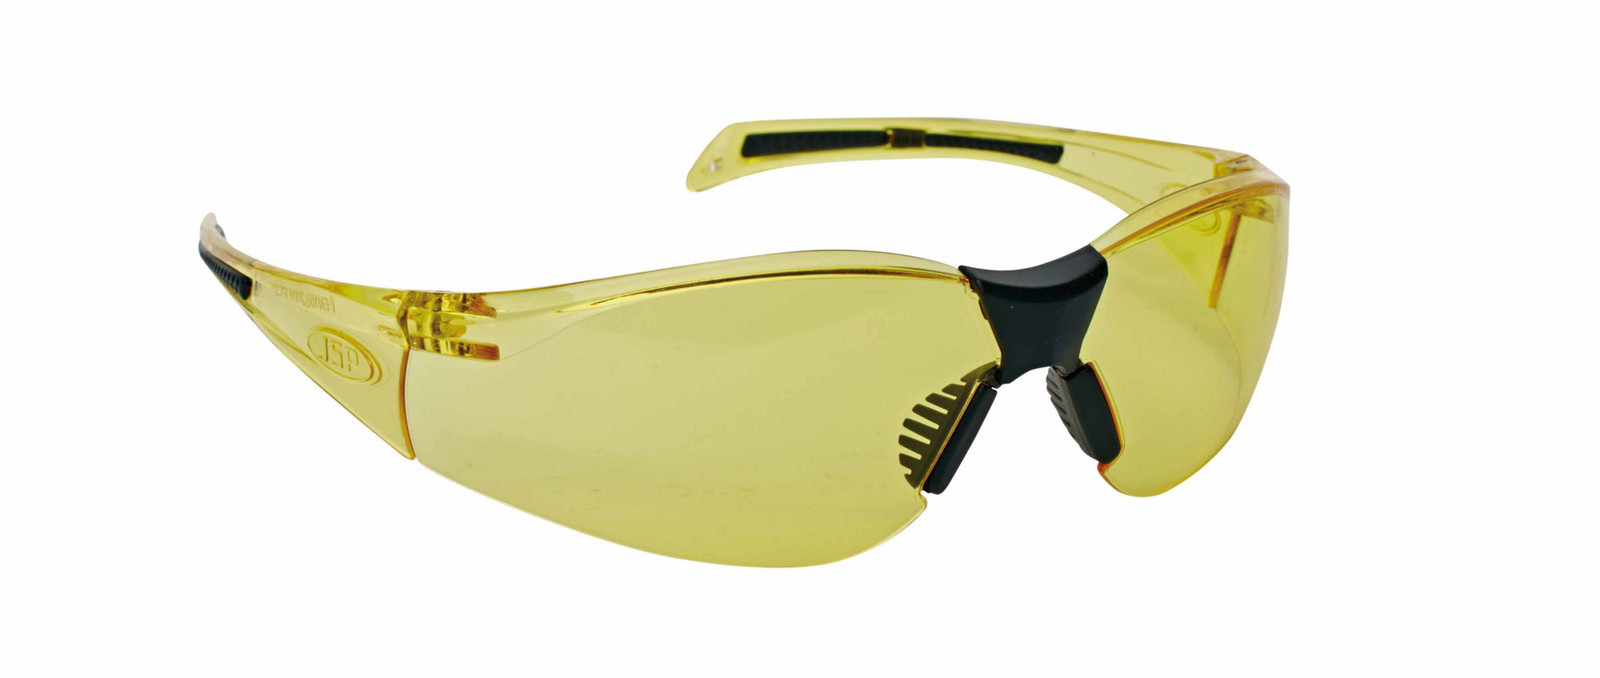 Ochranné okuliare Stealth 8000  - farba: žltá